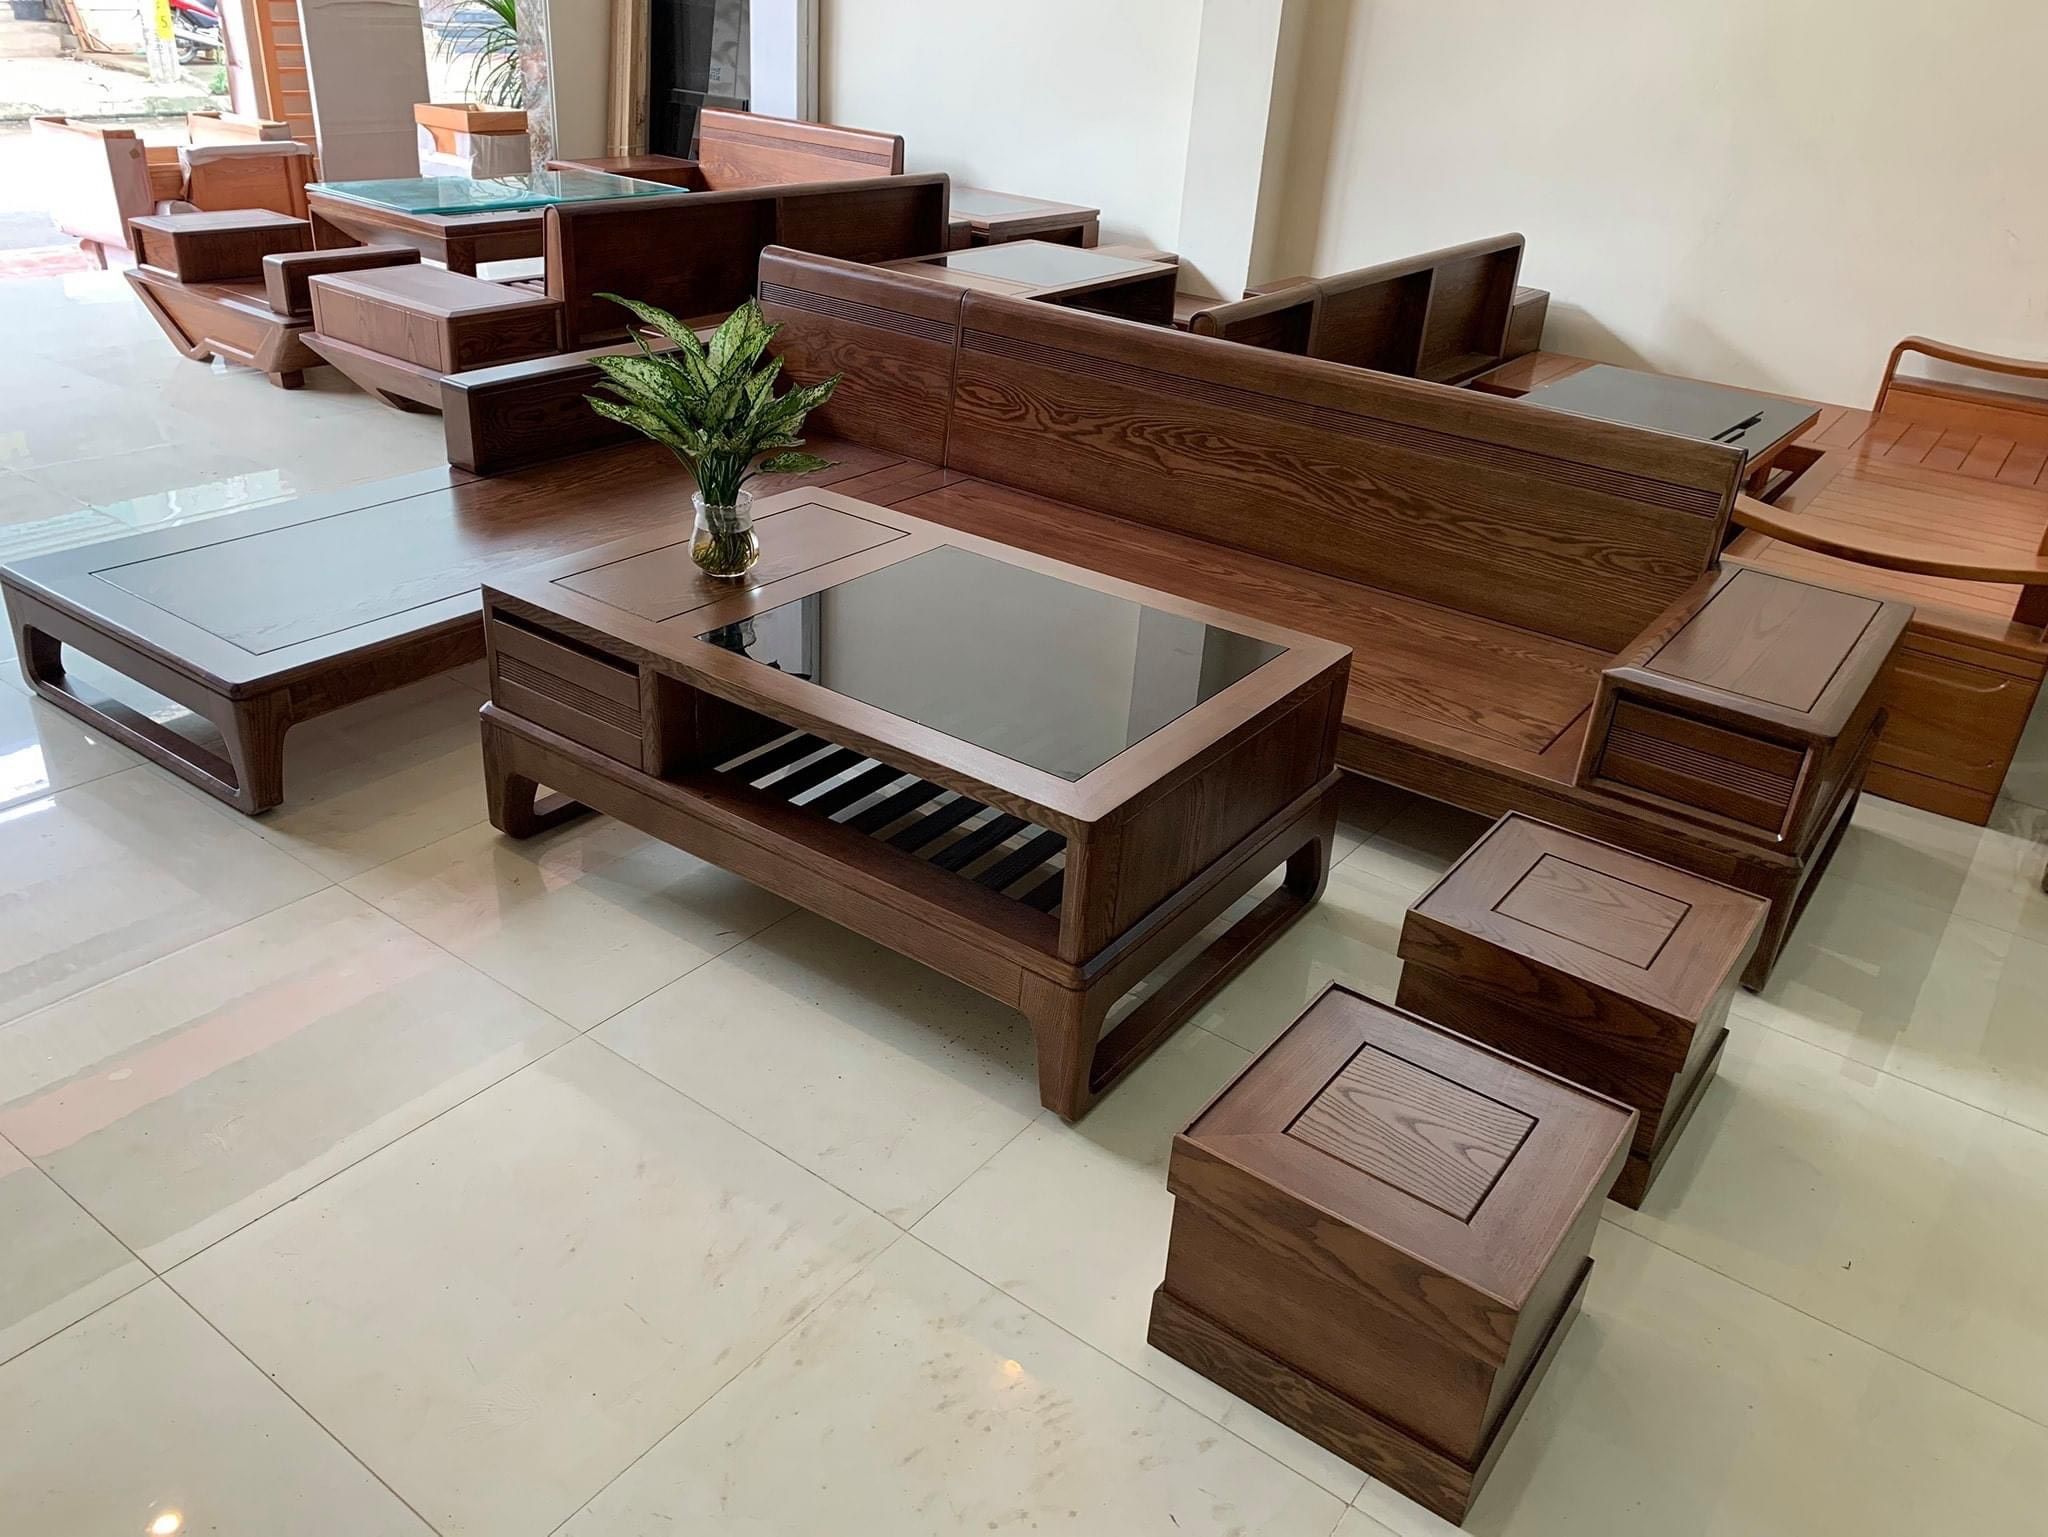 Bề mặt sofa gỗ mịn màng dễ dàng trong việc vệ sinh và lau chùi